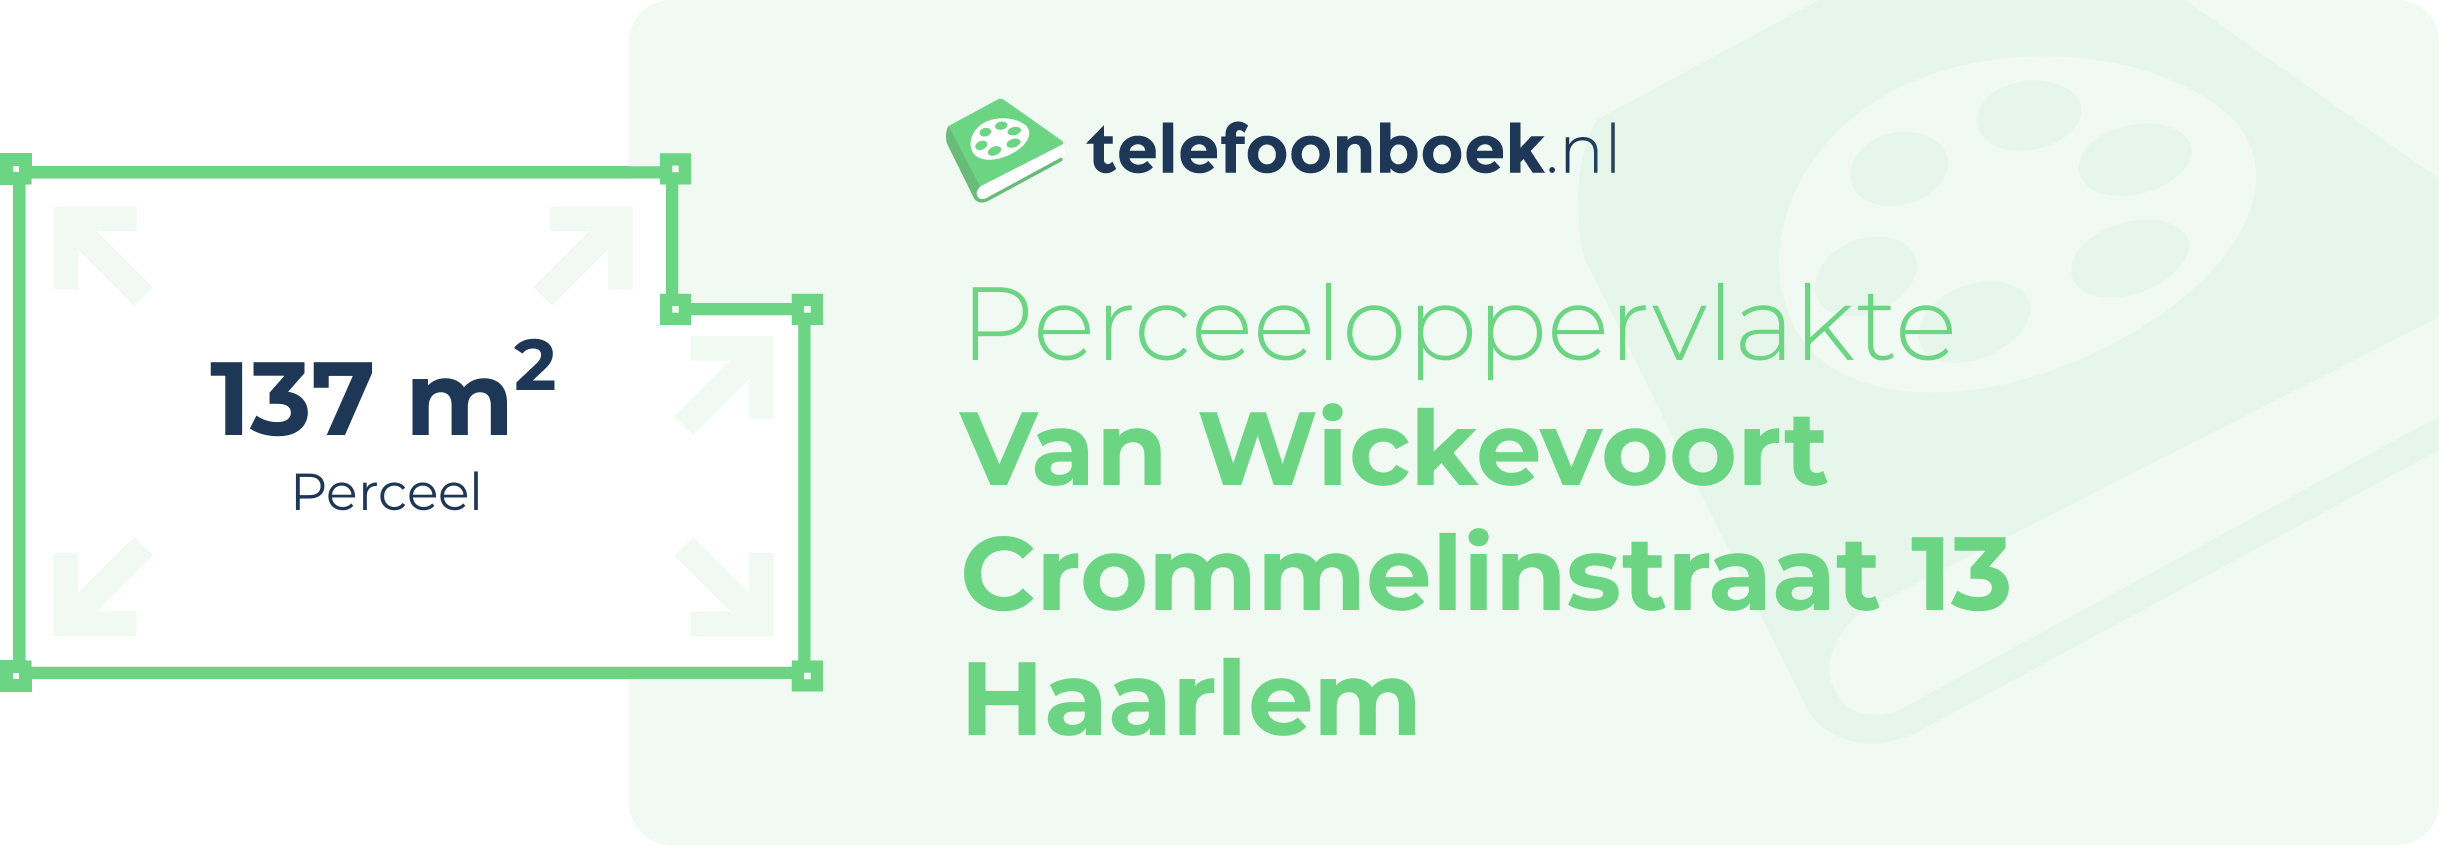 Perceeloppervlakte Van Wickevoort Crommelinstraat 13 Haarlem